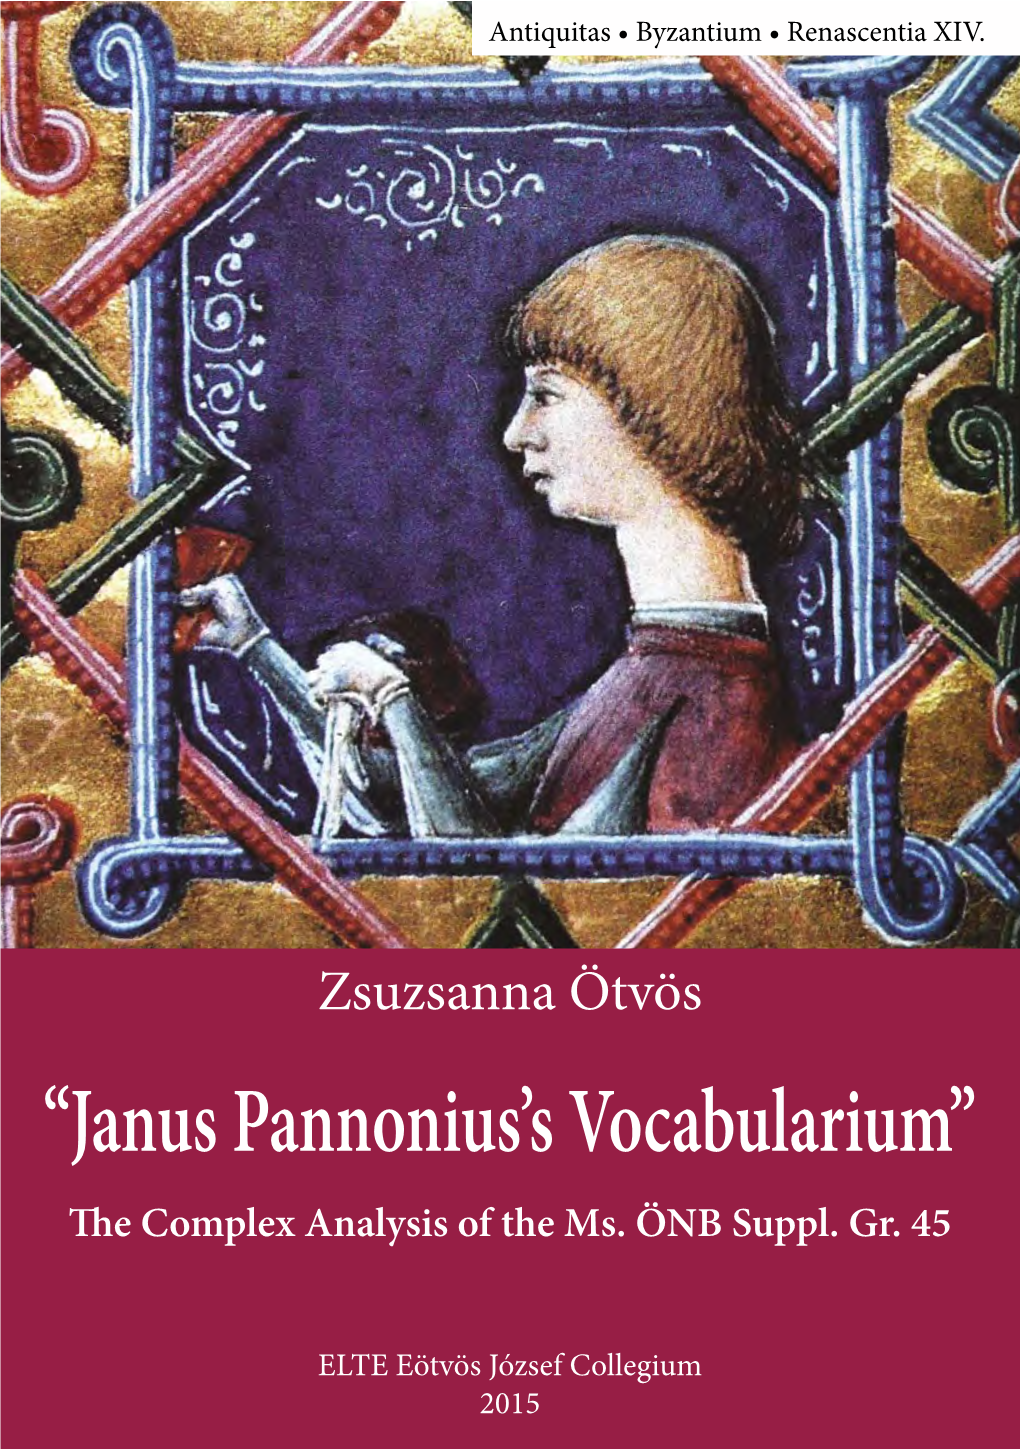 "Janus Pannonius's Vocabularium" : the Complex Analysis of the Ms